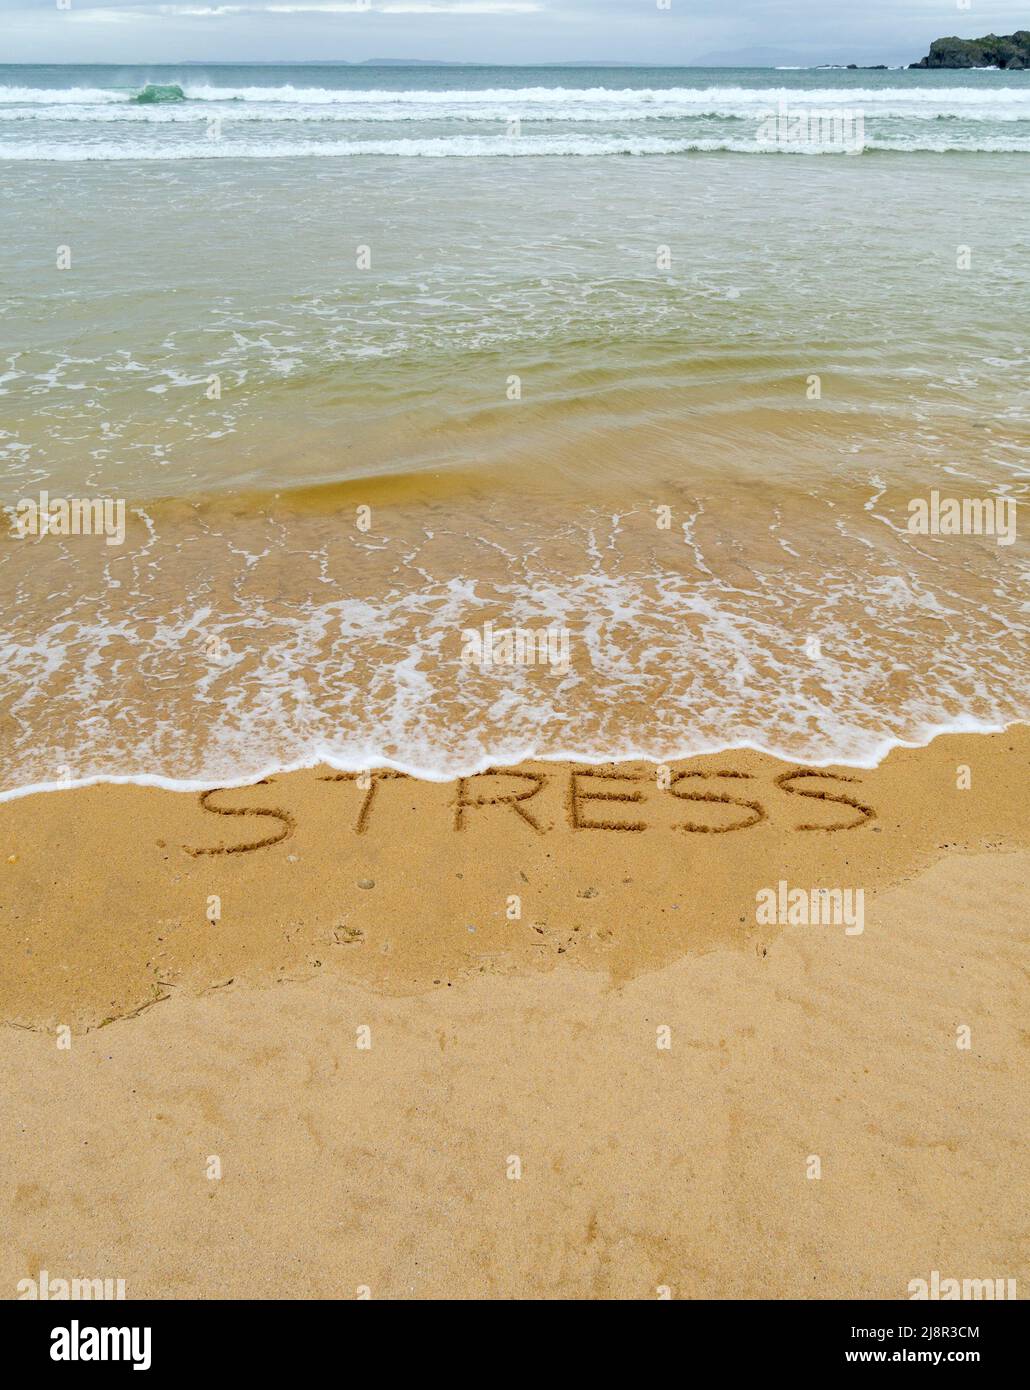 Concepto de imagen - para ilustrar el lavado del estrés tomando unas vacaciones como las olas en una playa de arena lavar la palabra 'stress' escrito en arena. Foto de stock